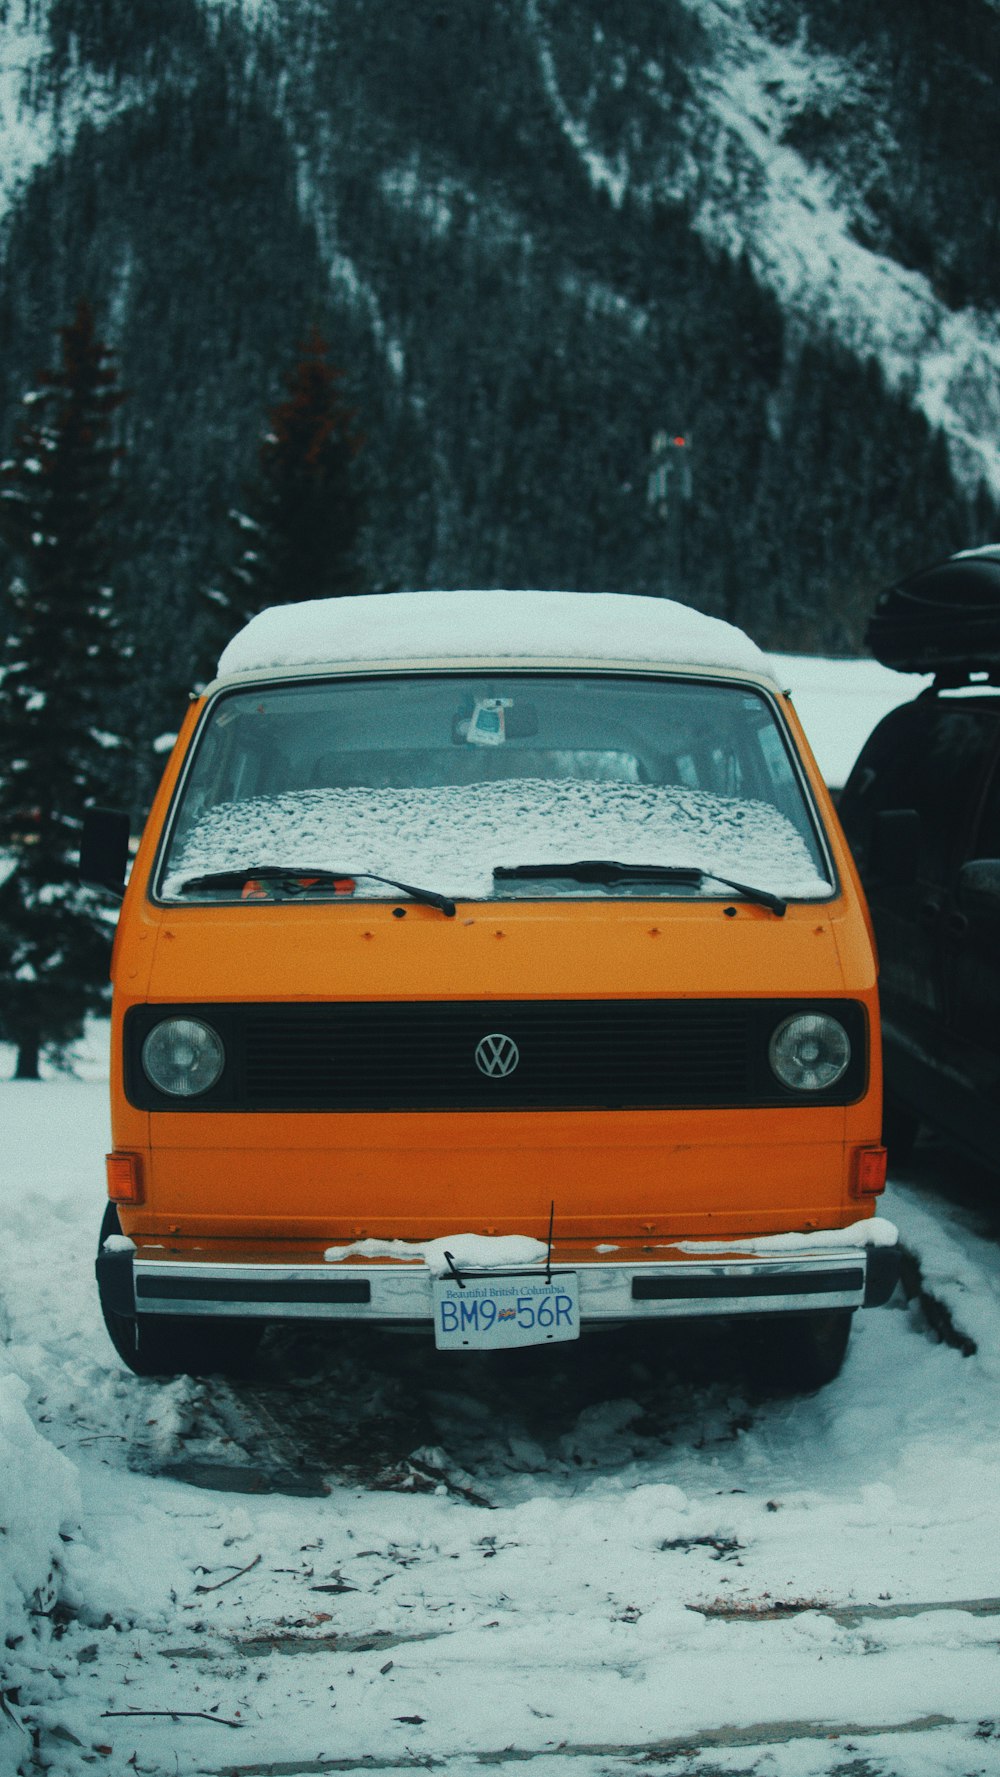 véhicule Volkswagen orange